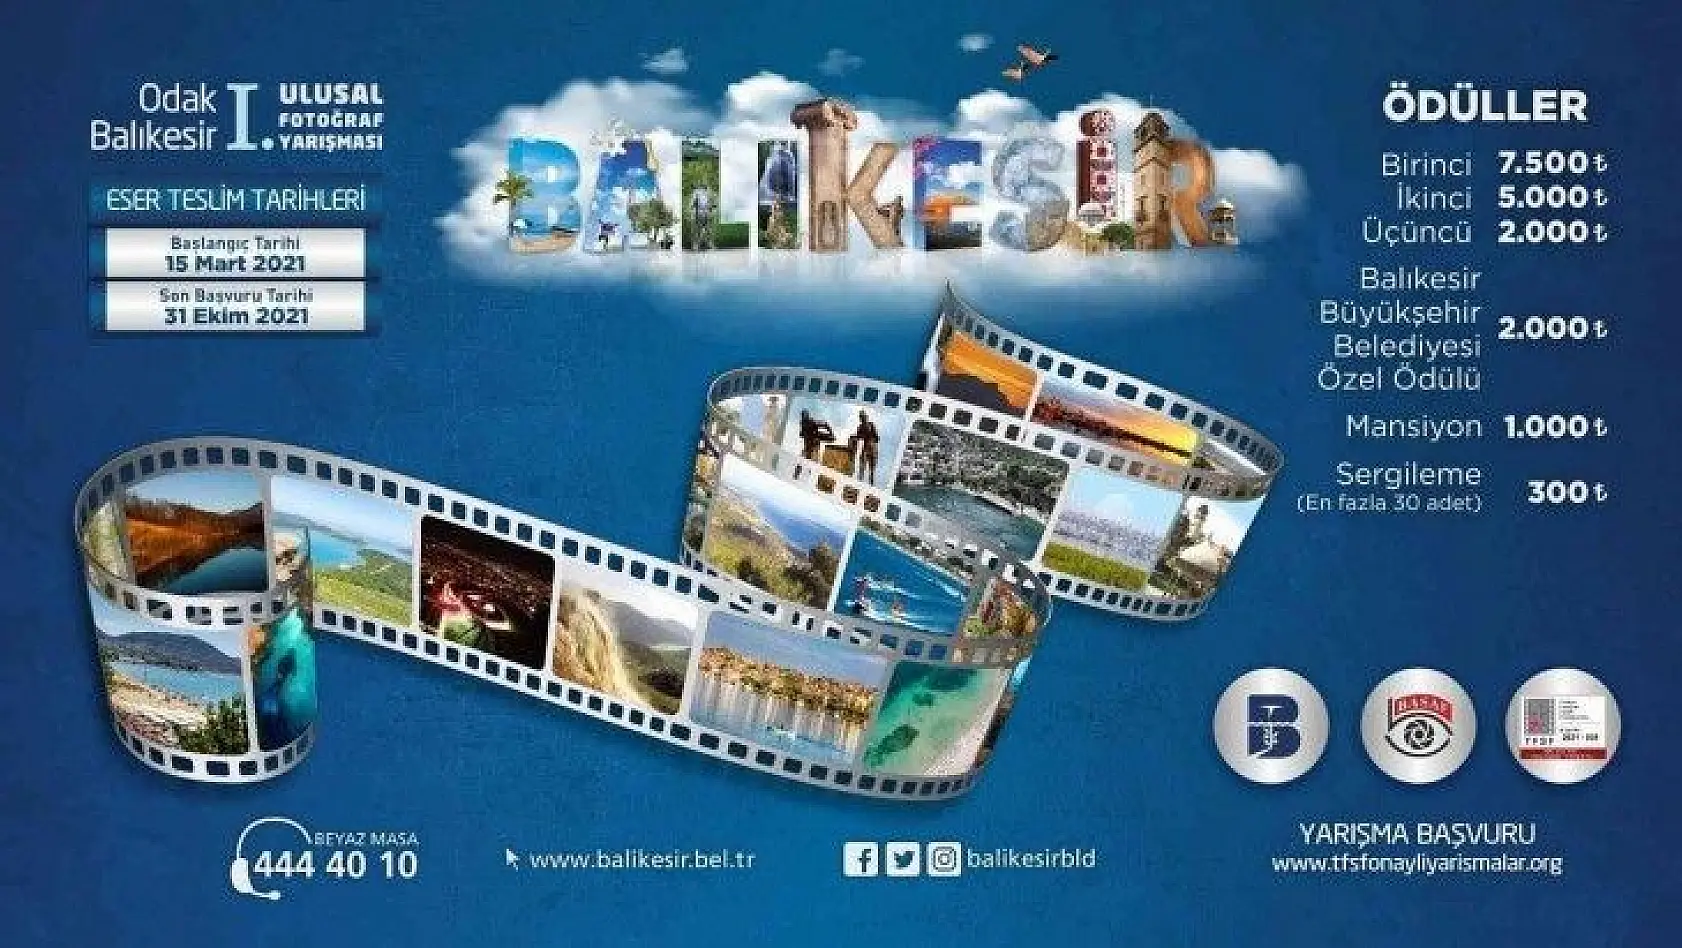 Büyükşehir'den Balıkesir temalı fotoğraf yarışması